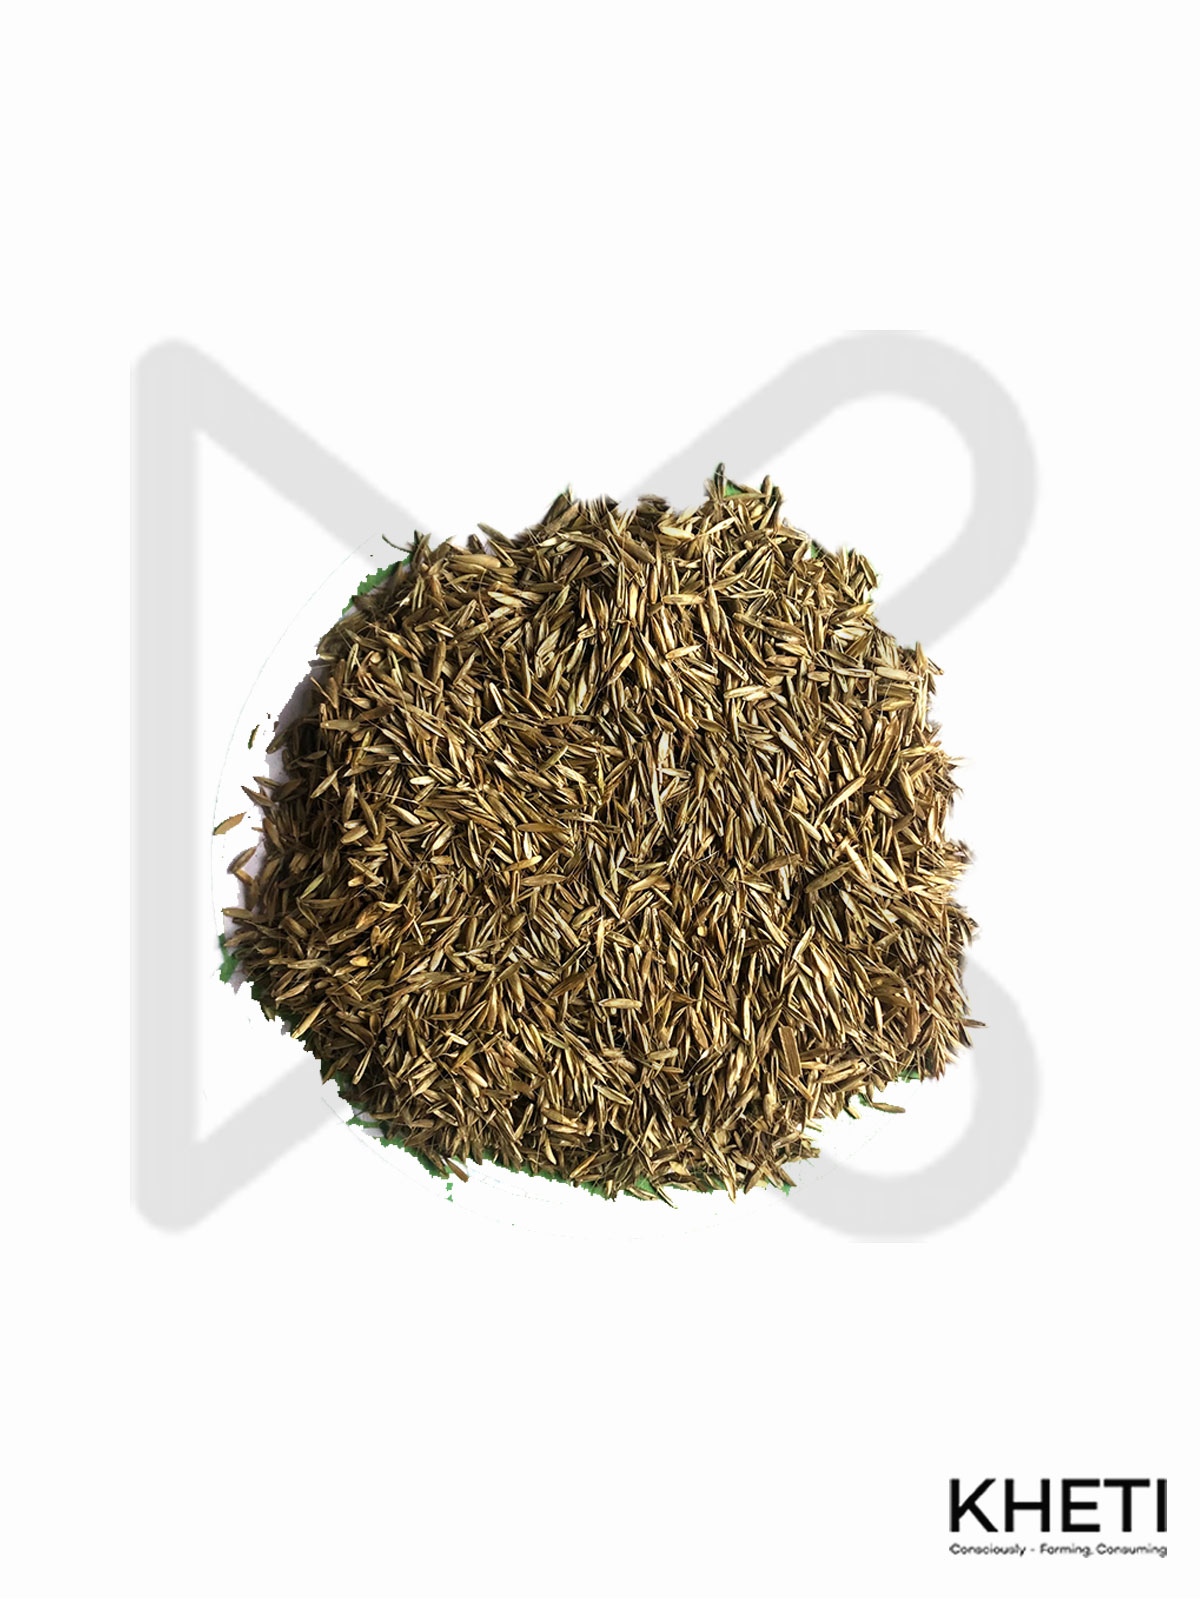 Rye grass seed